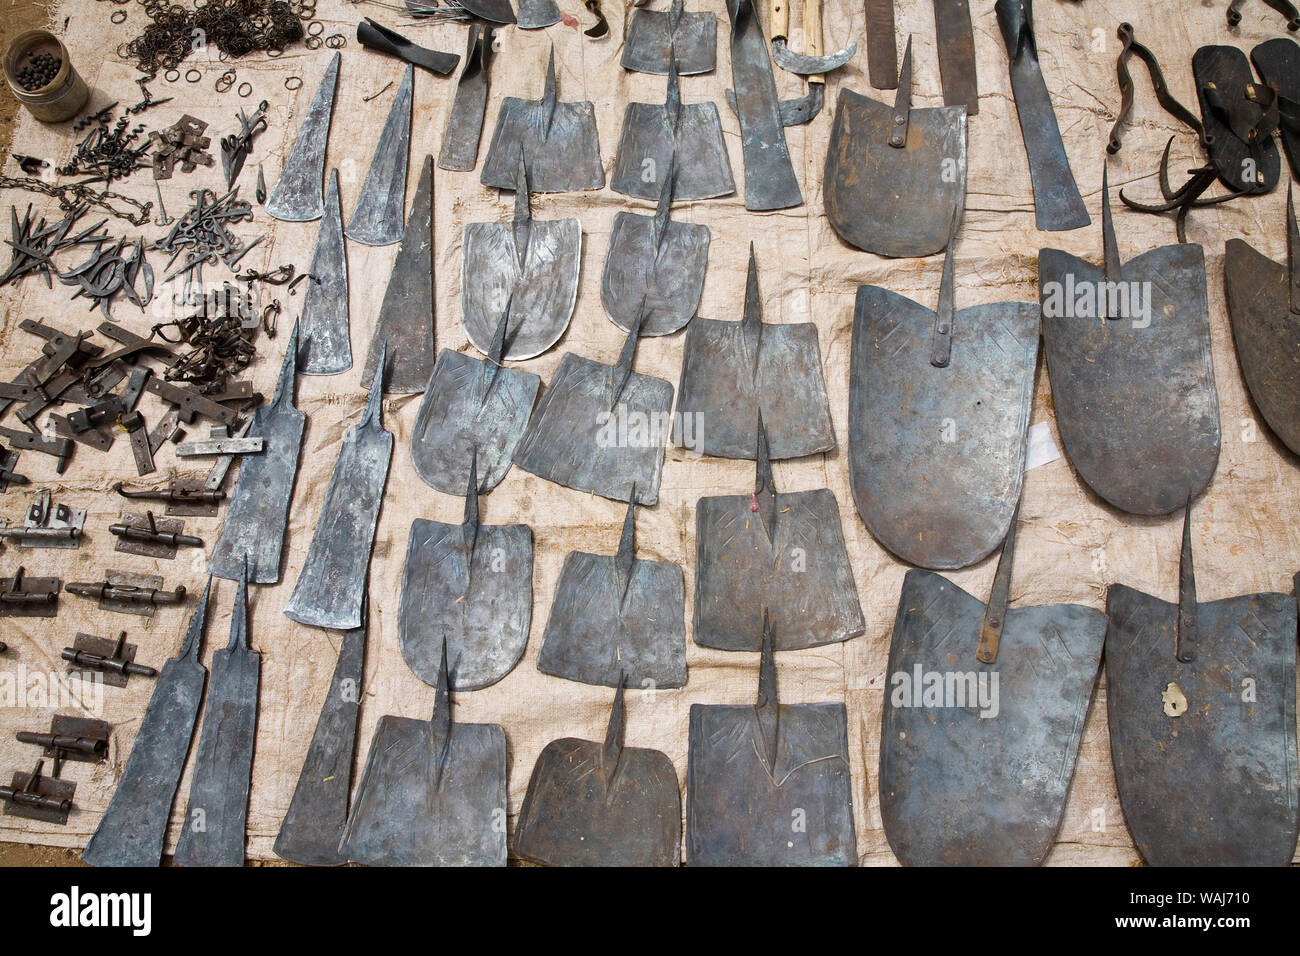 L'Afrique de l'ouest, au Bénin. Divers outils de métal pour la vente au marché en plein-air. Banque D'Images